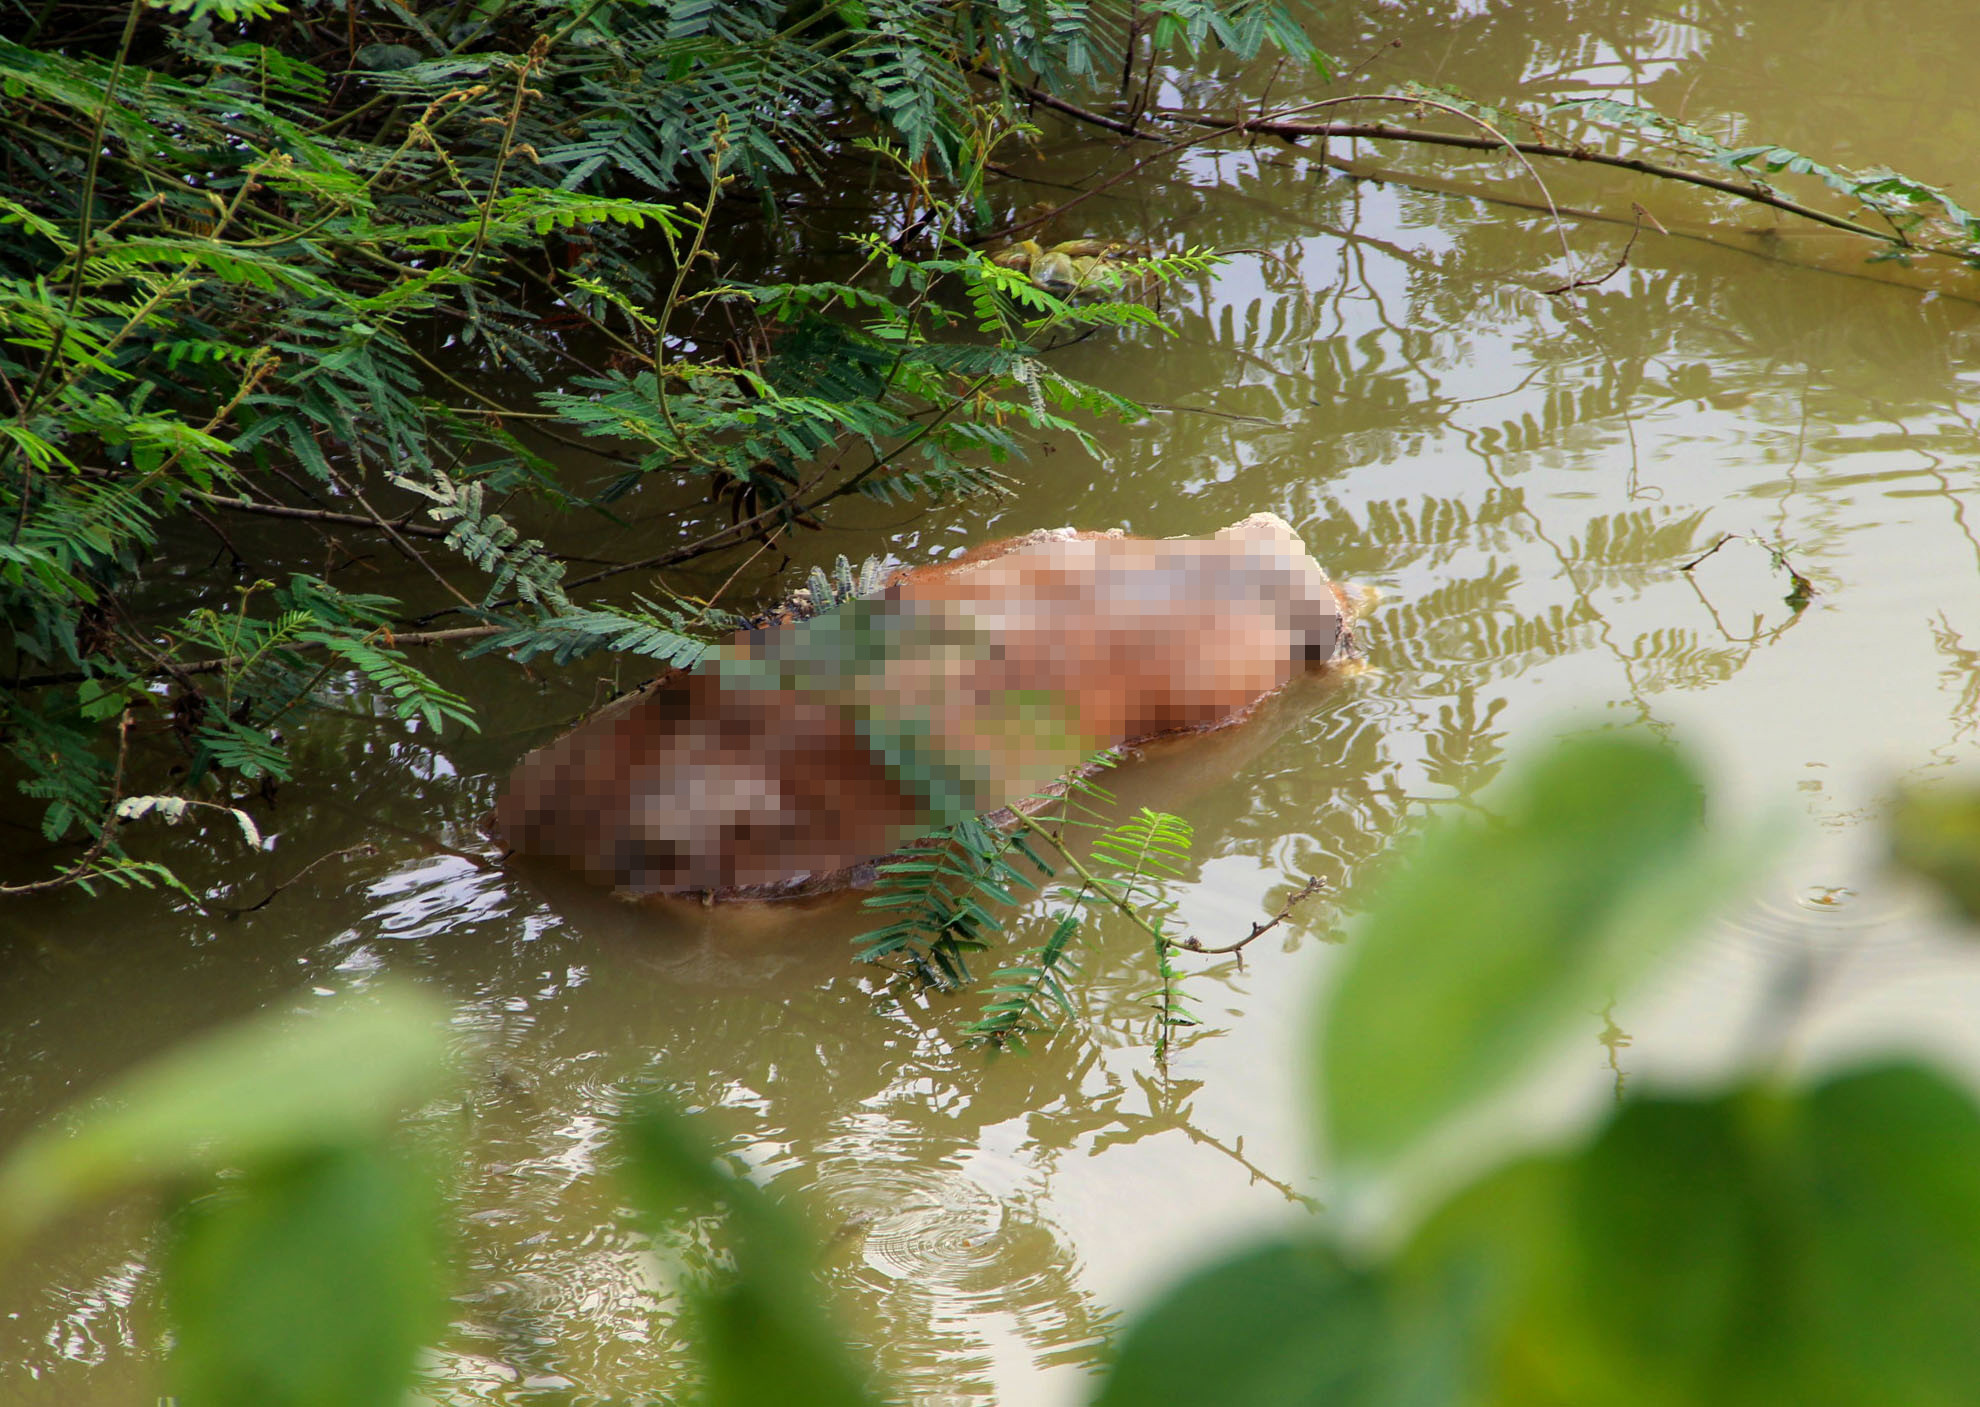 Xác lợn khoảng 70kg đang phân hủy tại đường ra đò Phuống, xã Thanh Yên, Thanh Chương. Ảnh: Nguyên Châu